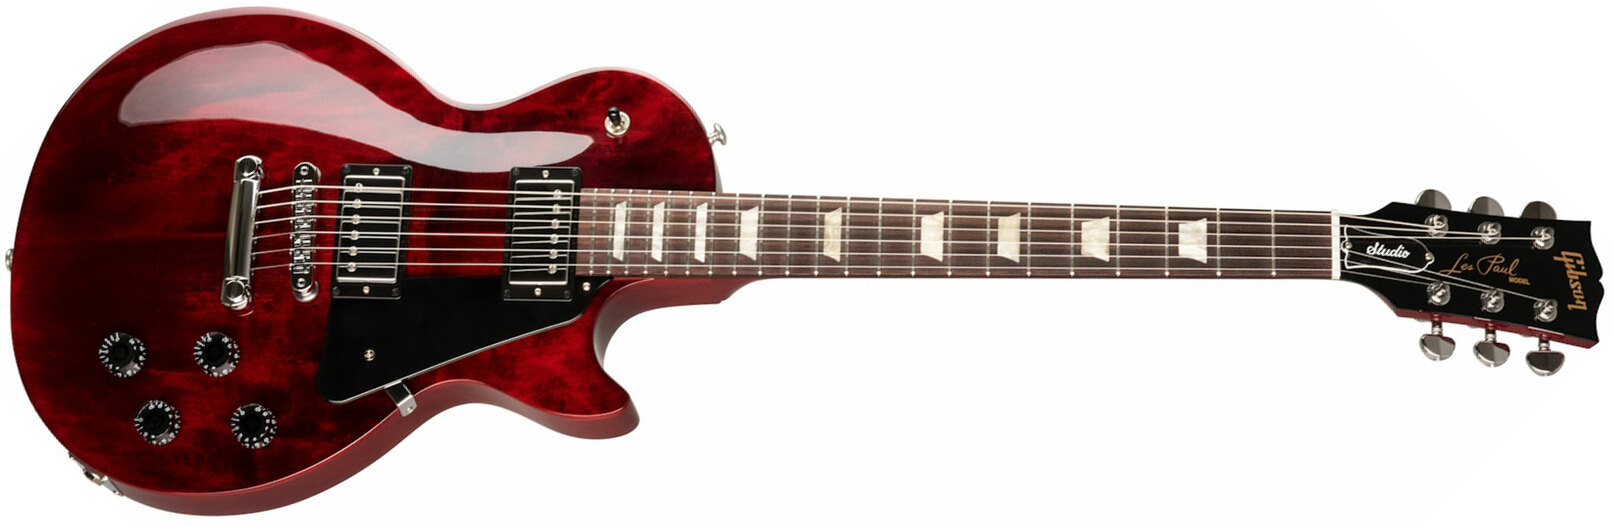 Gibson Les Paul Studio Modern 2019 2h Ht Rw - Wine Red - Enkel gesneden elektrische gitaar - Main picture